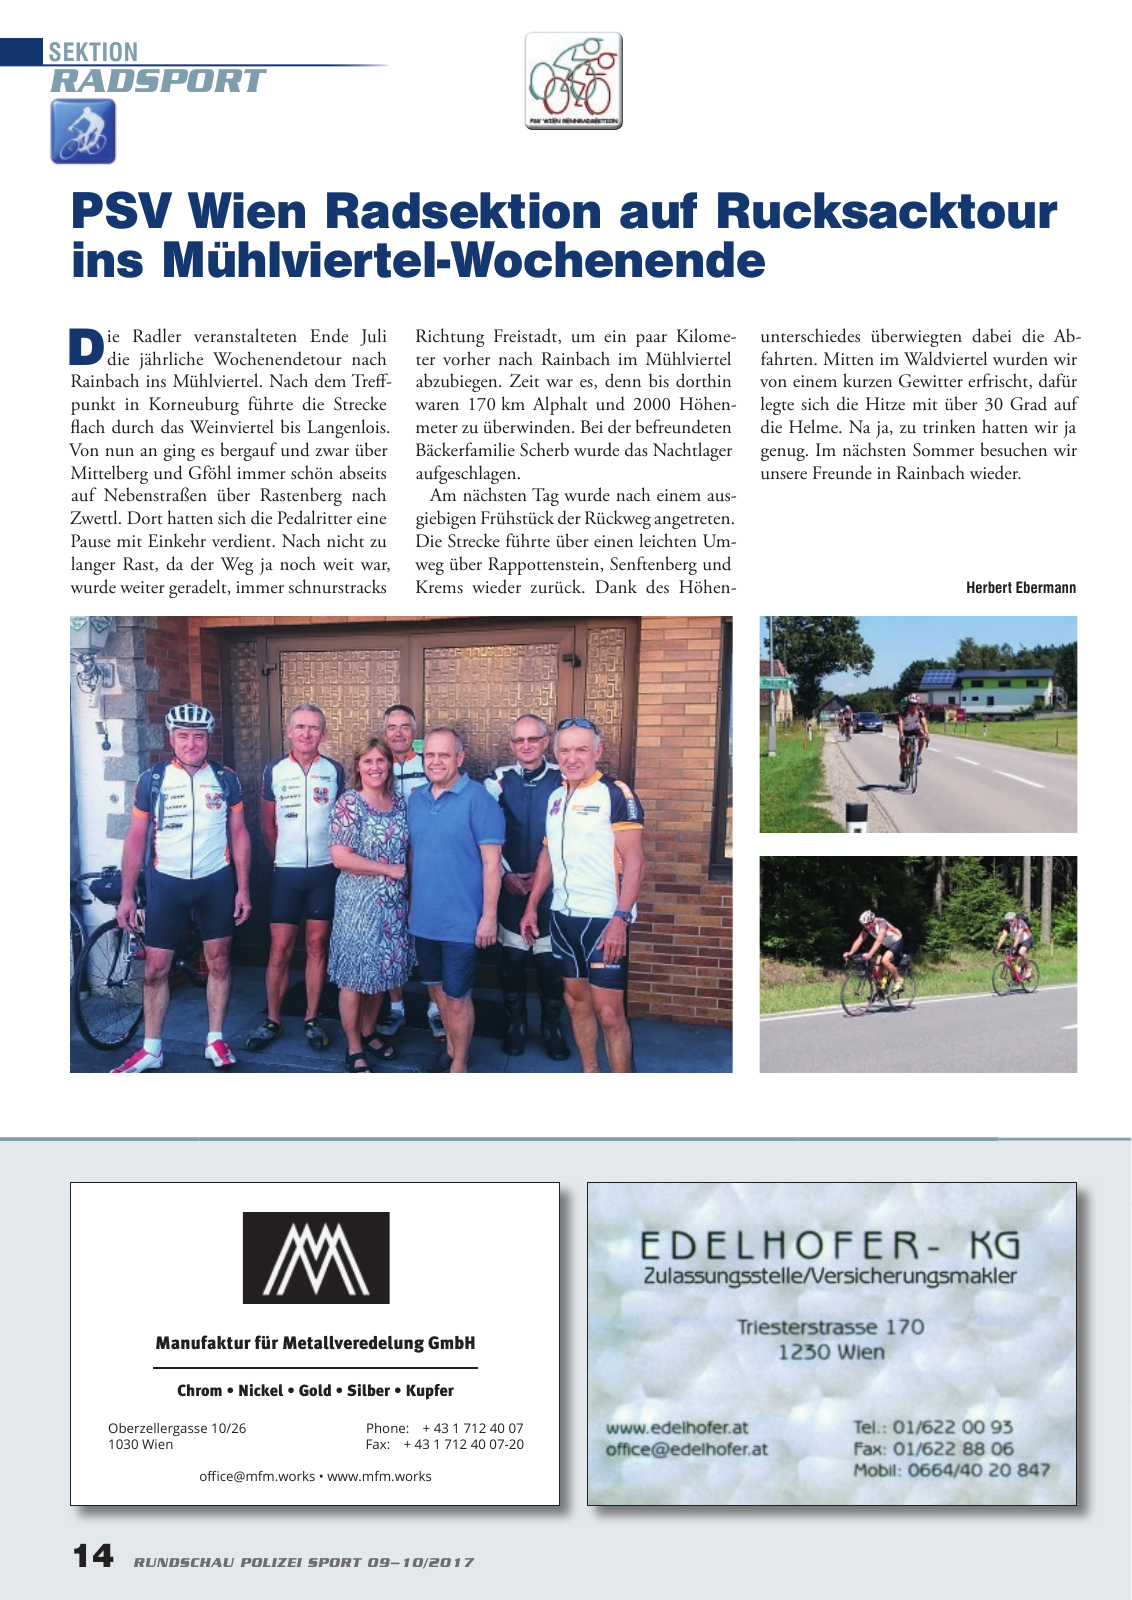 Vorschau Rundschau Polizei Sport 09-10/2017 Seite 14